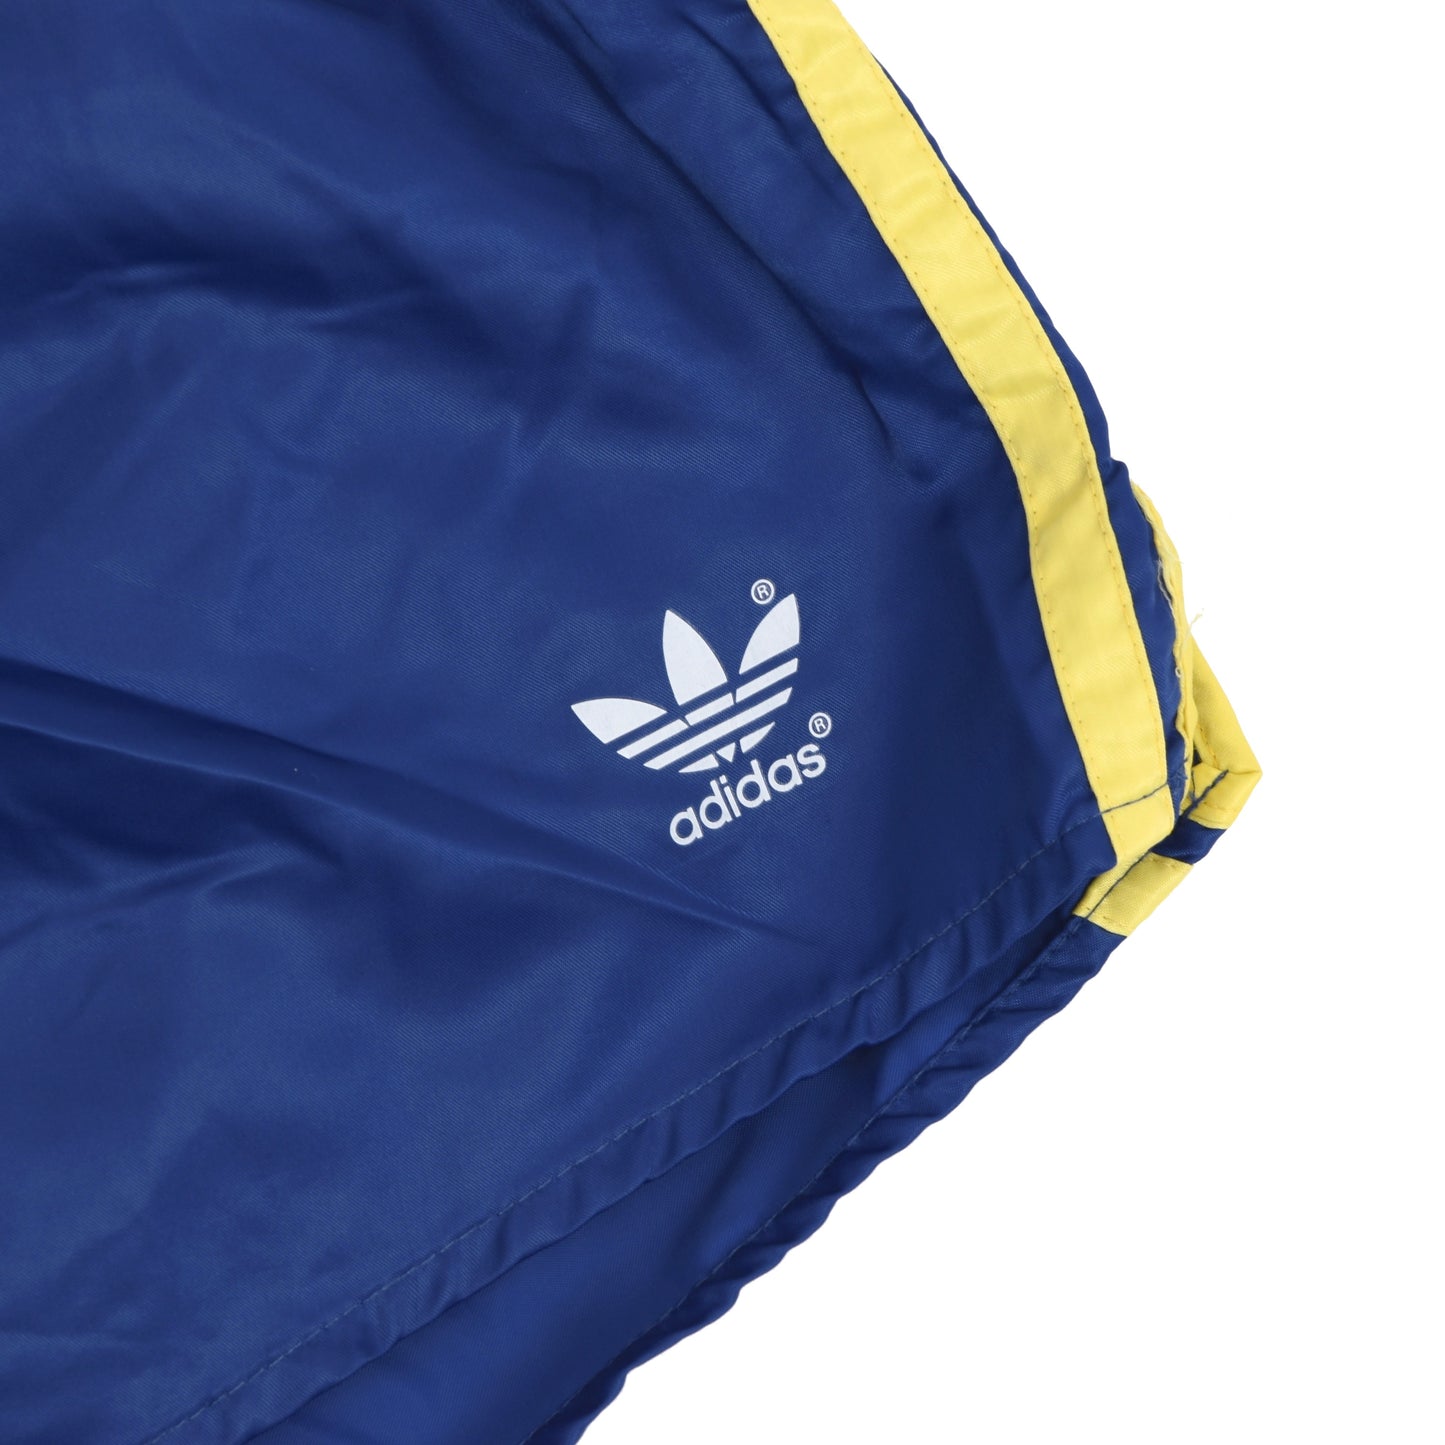 Vintage Adidas Sprinter Shorts Größe D6 - blau/gelb